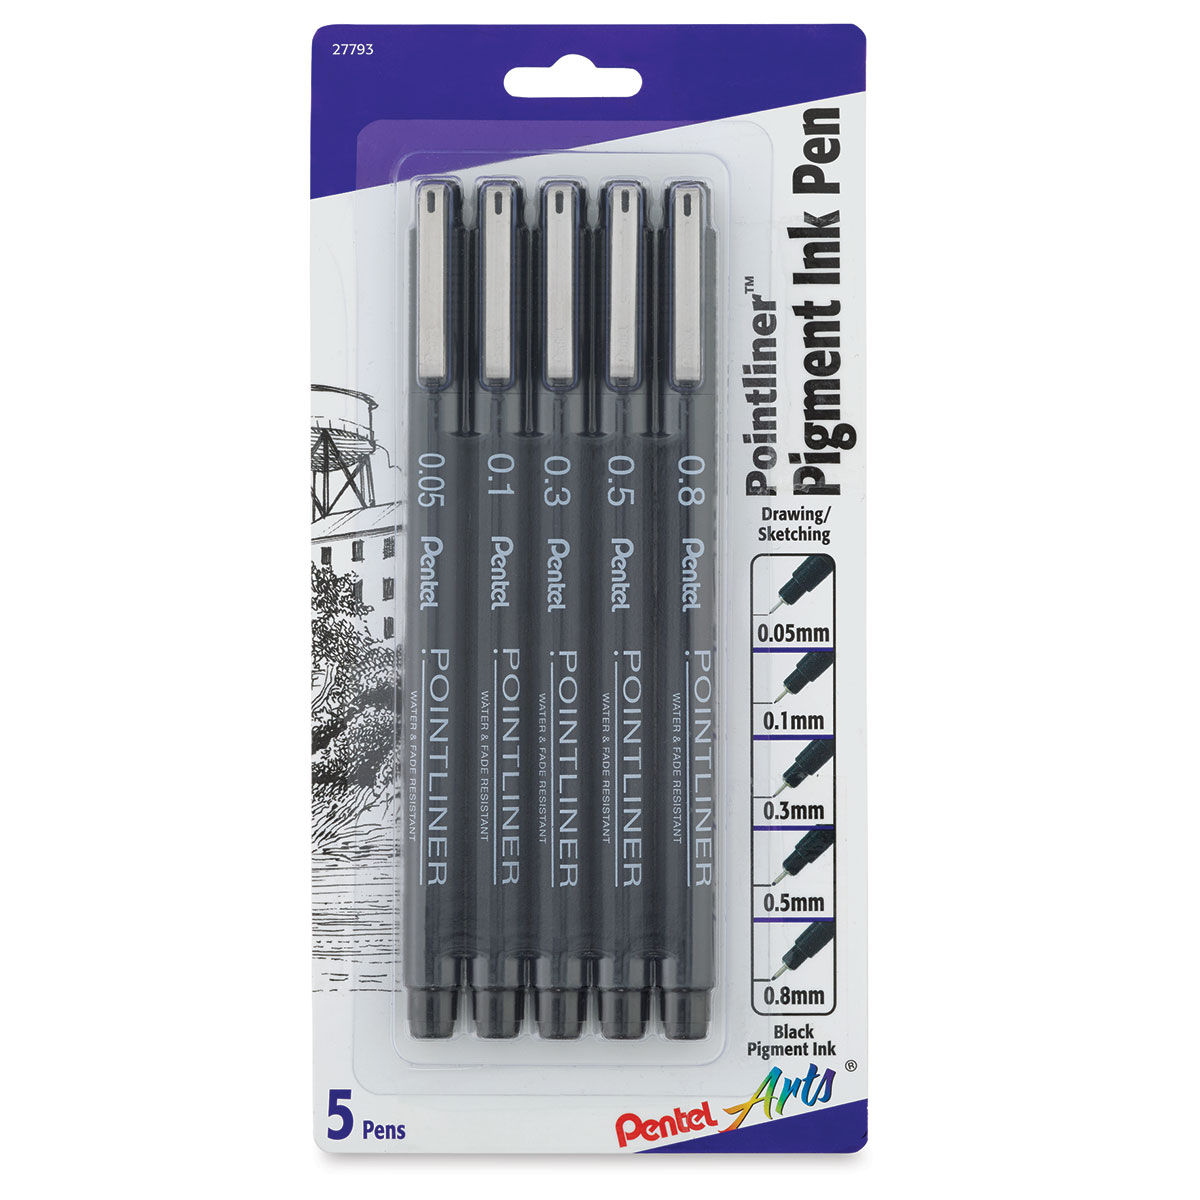 Pentel Arts Pointliner Pens - Pkg of 5, Assorted Sizes | BLICK Art ...